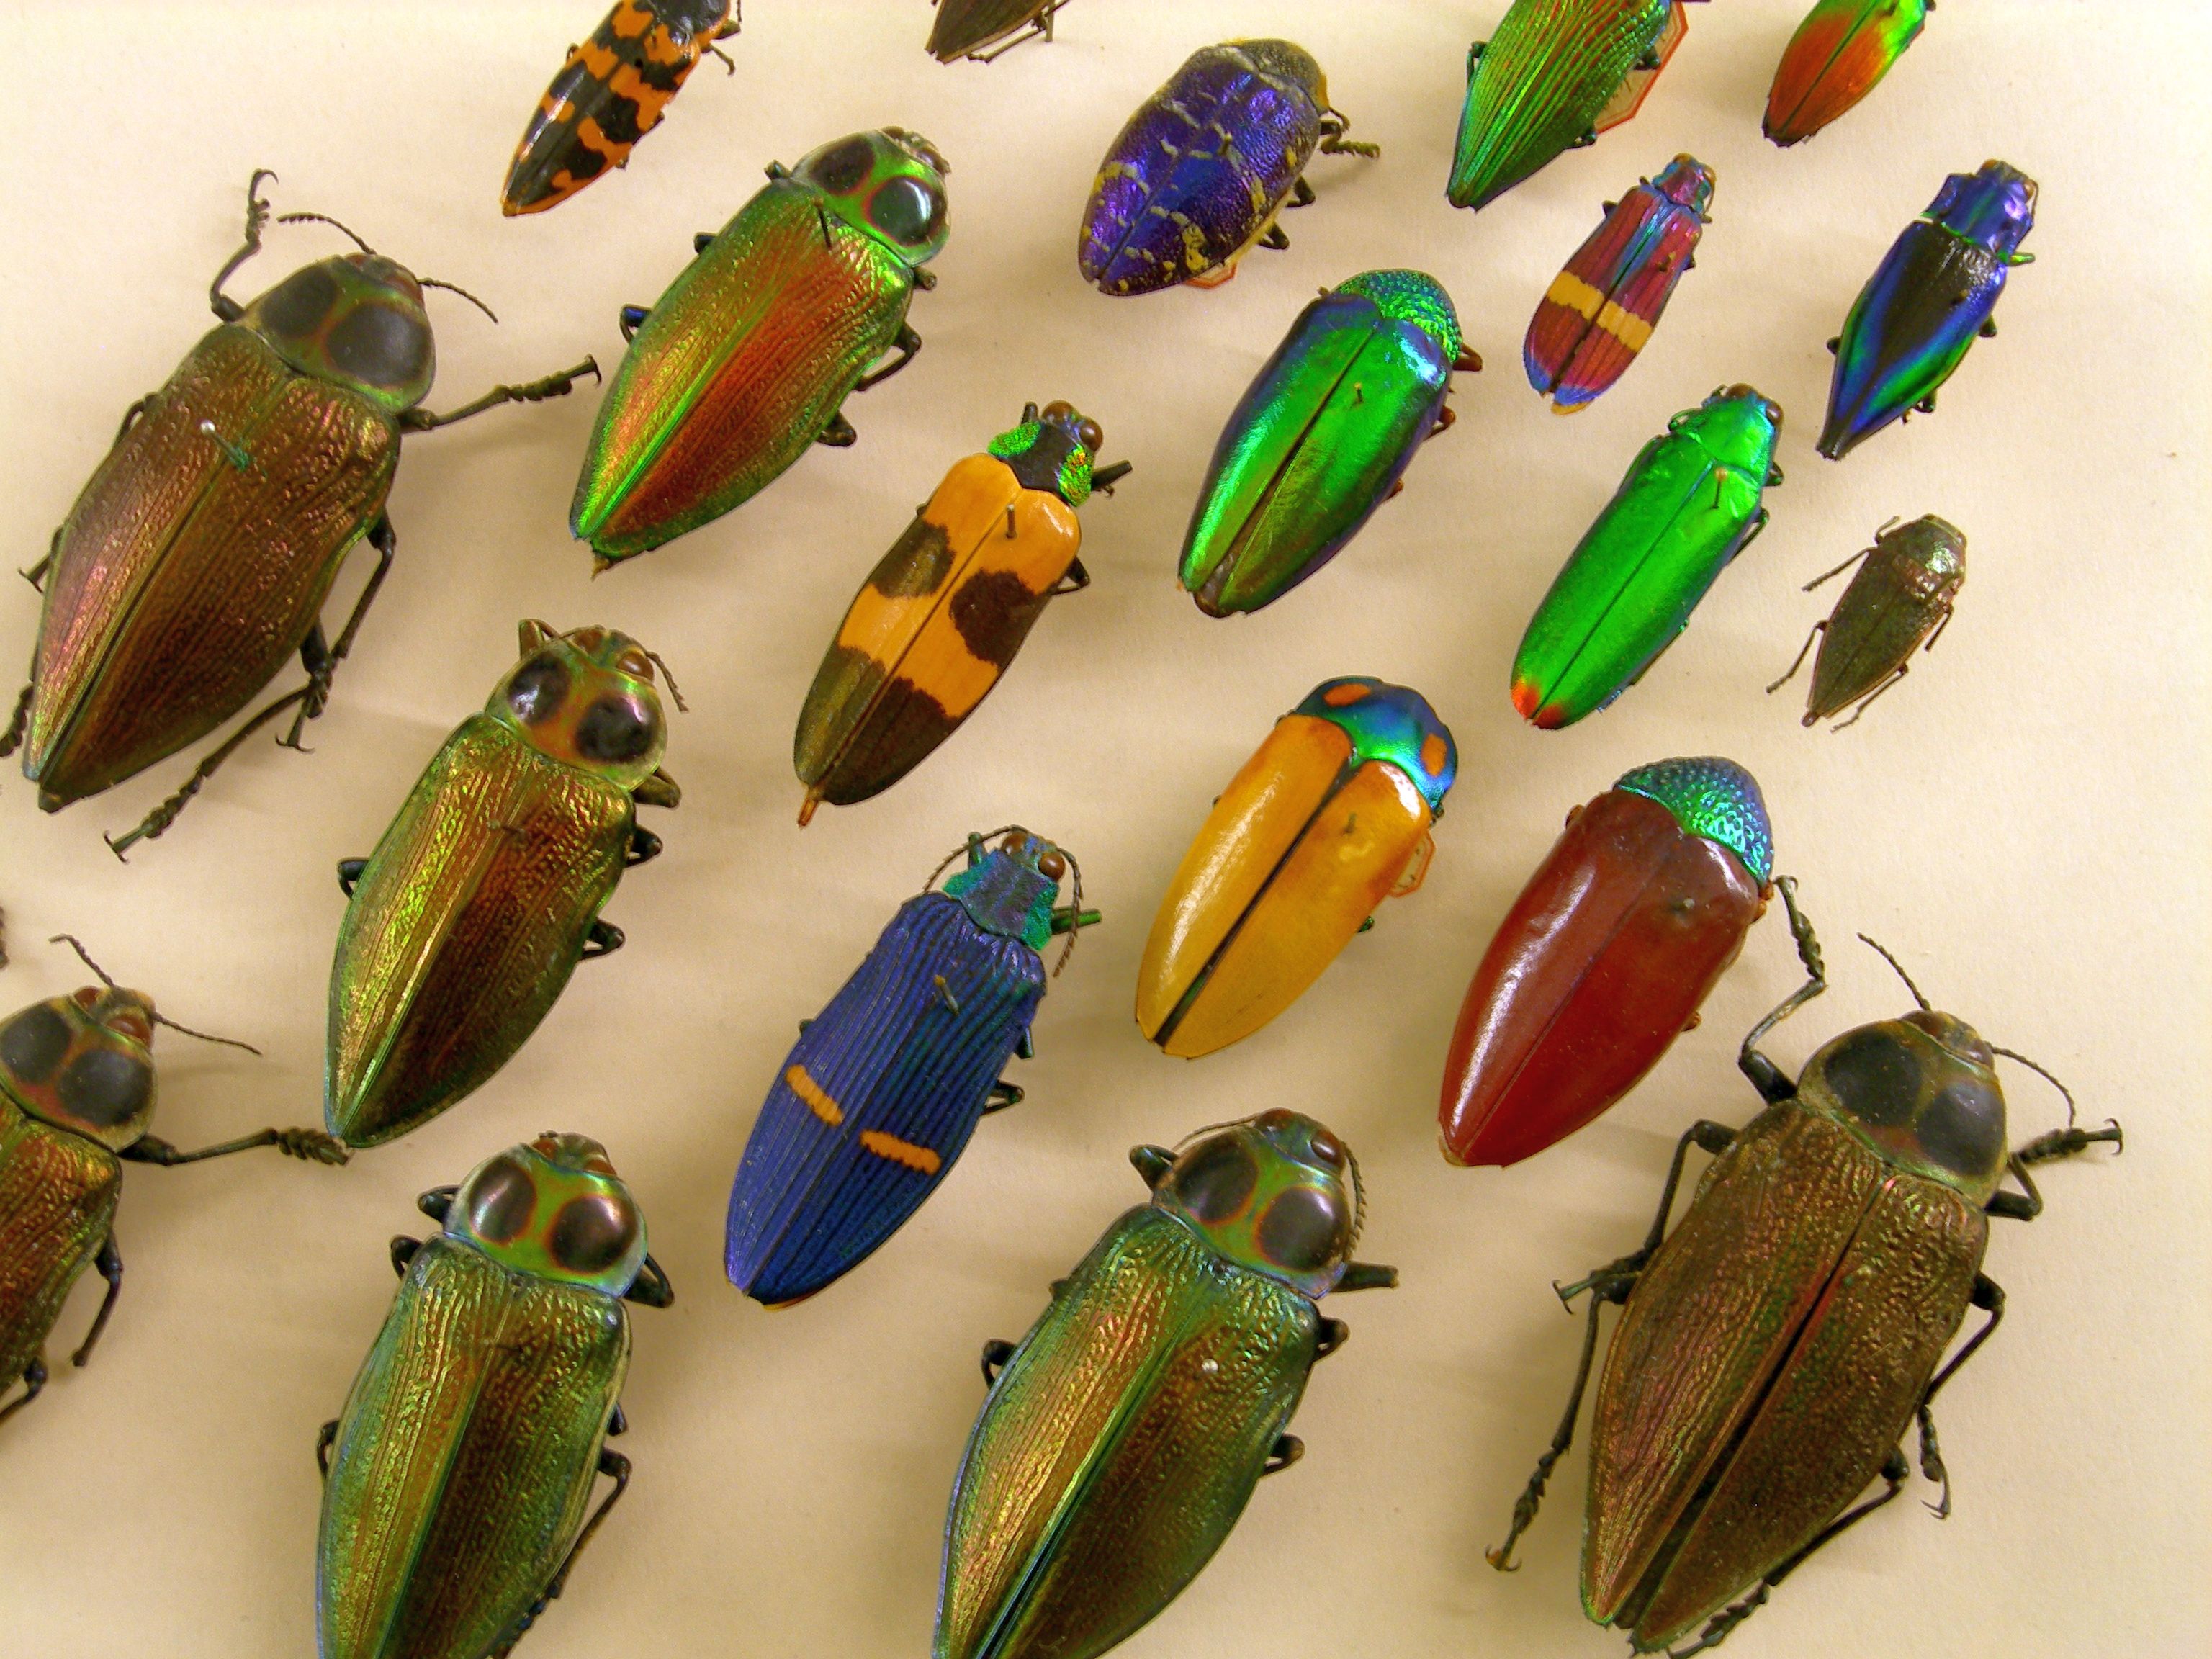 Käfervielfalt im Naturkundemuseum. Mausklick führt zu einer vergrößerten Ansicht